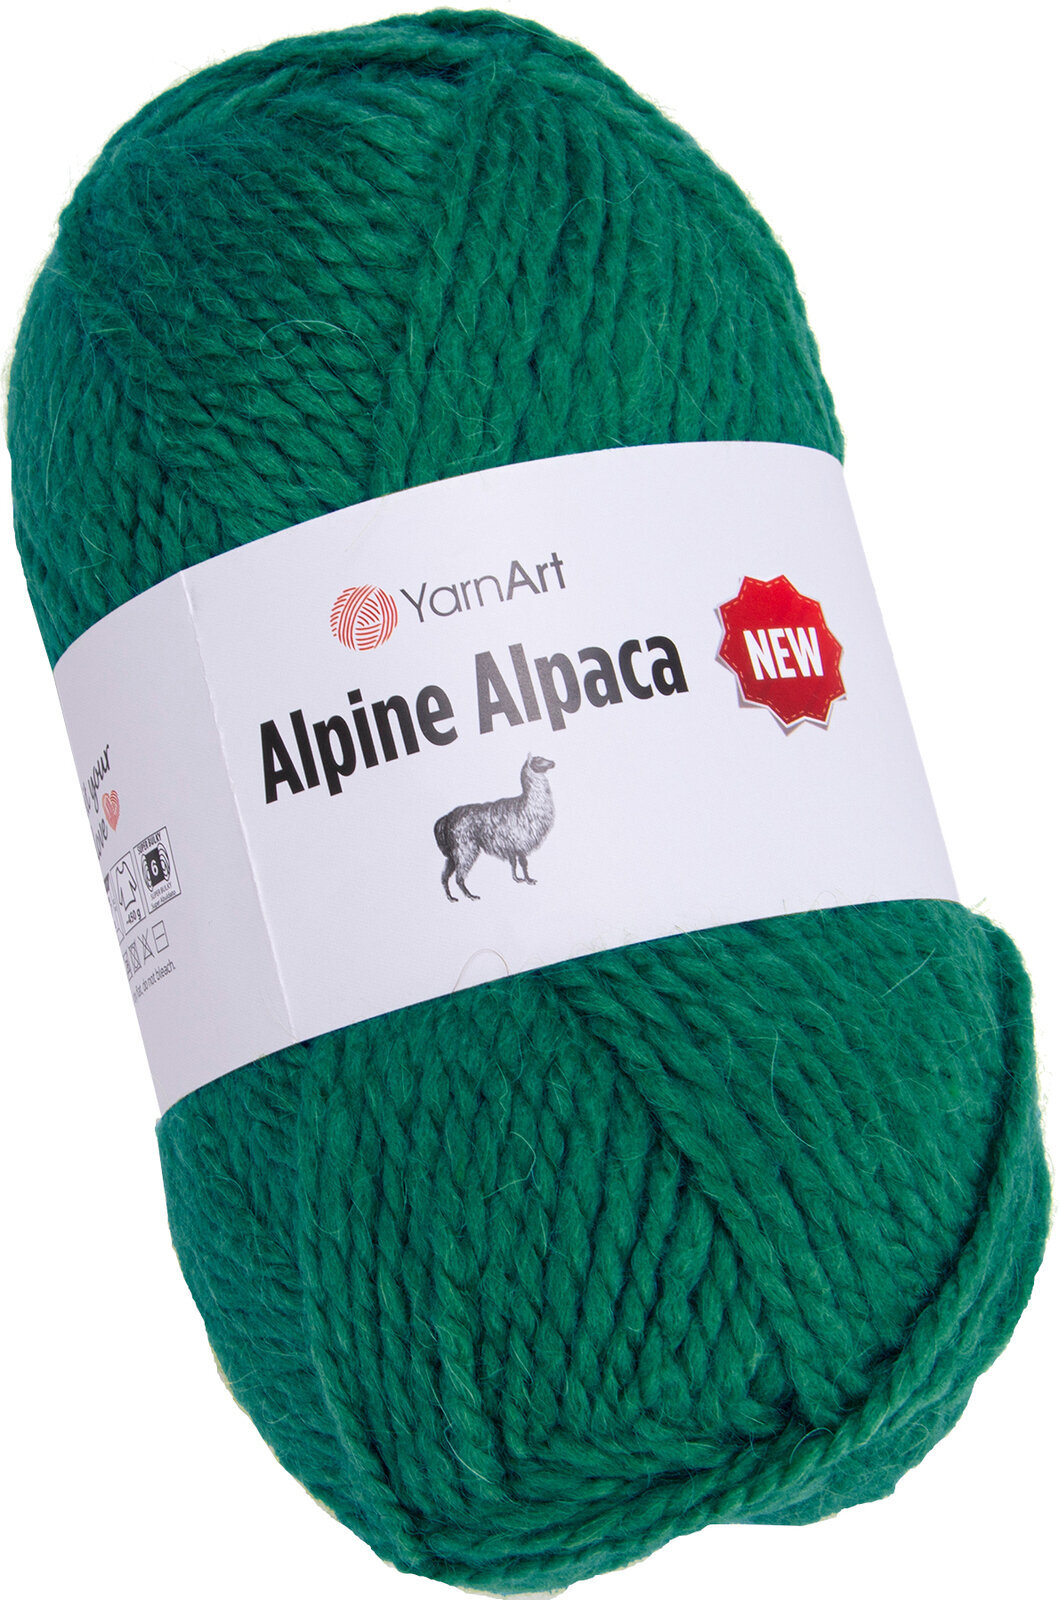 Przędza dziewiarska Yarn Art Alpine Alpaca New 1449